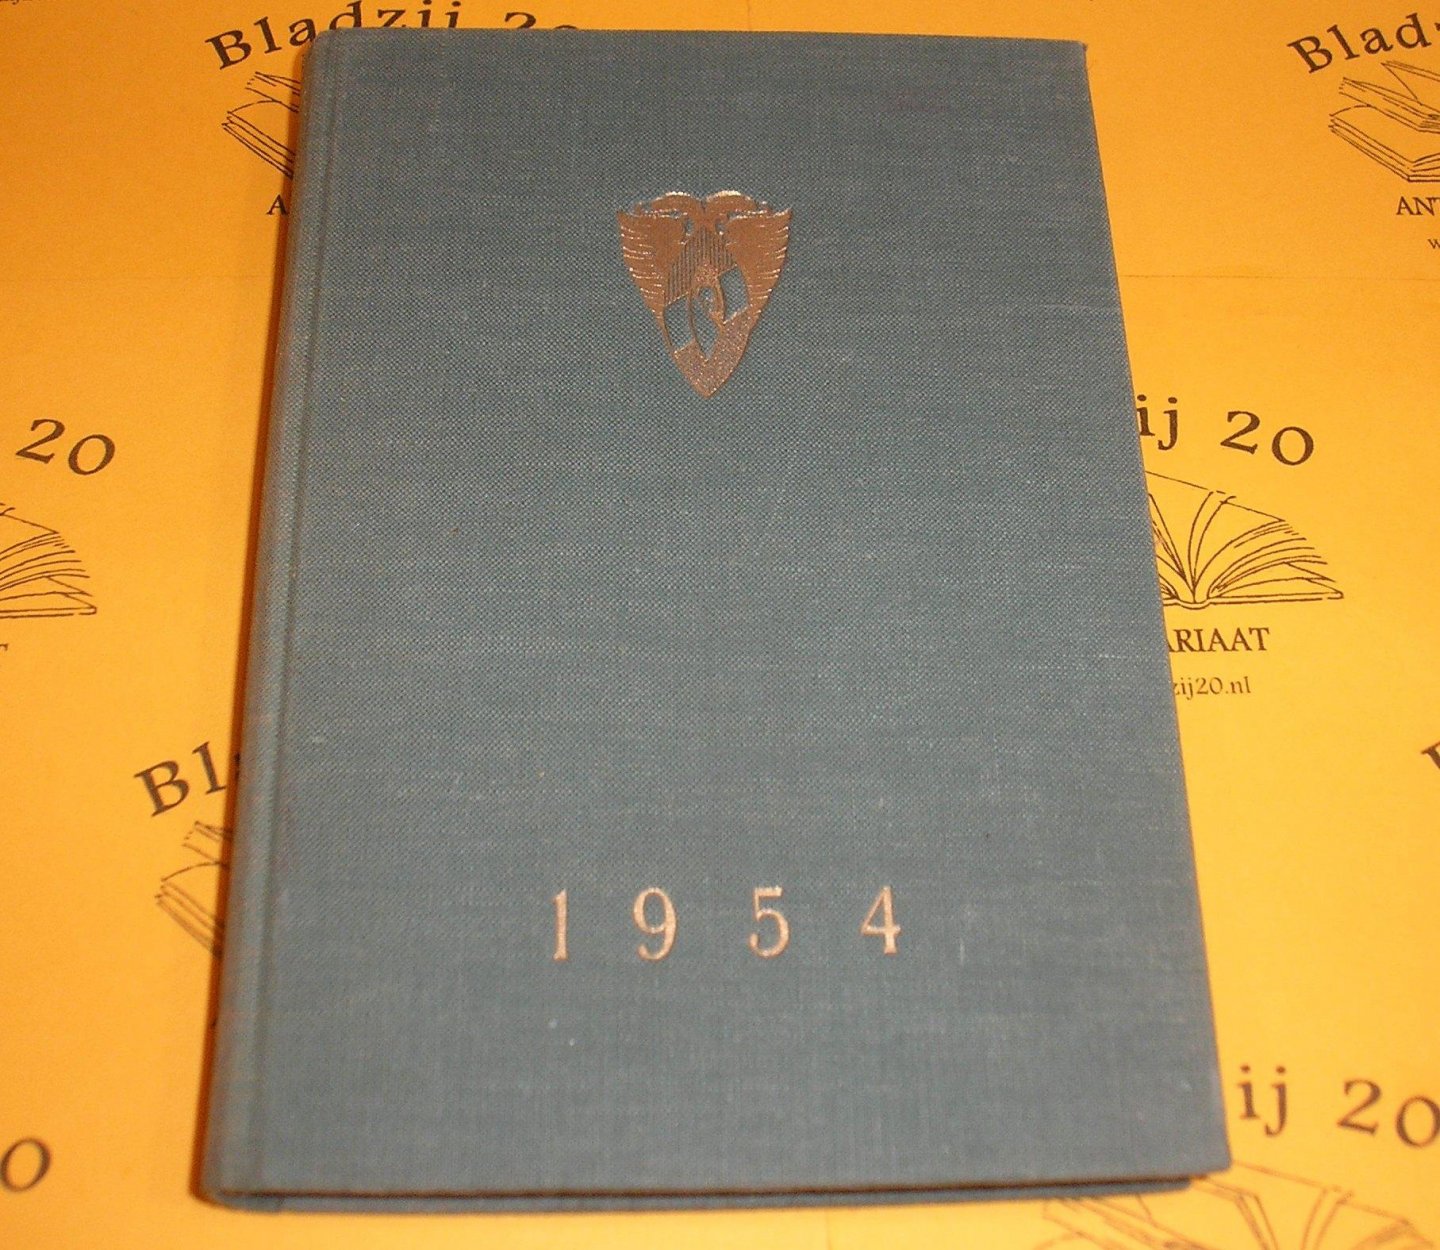 Almanak Magna Pete 1954. - Almanak der Groningsche vrouwelijke studentenclub Magna Pete 1954.